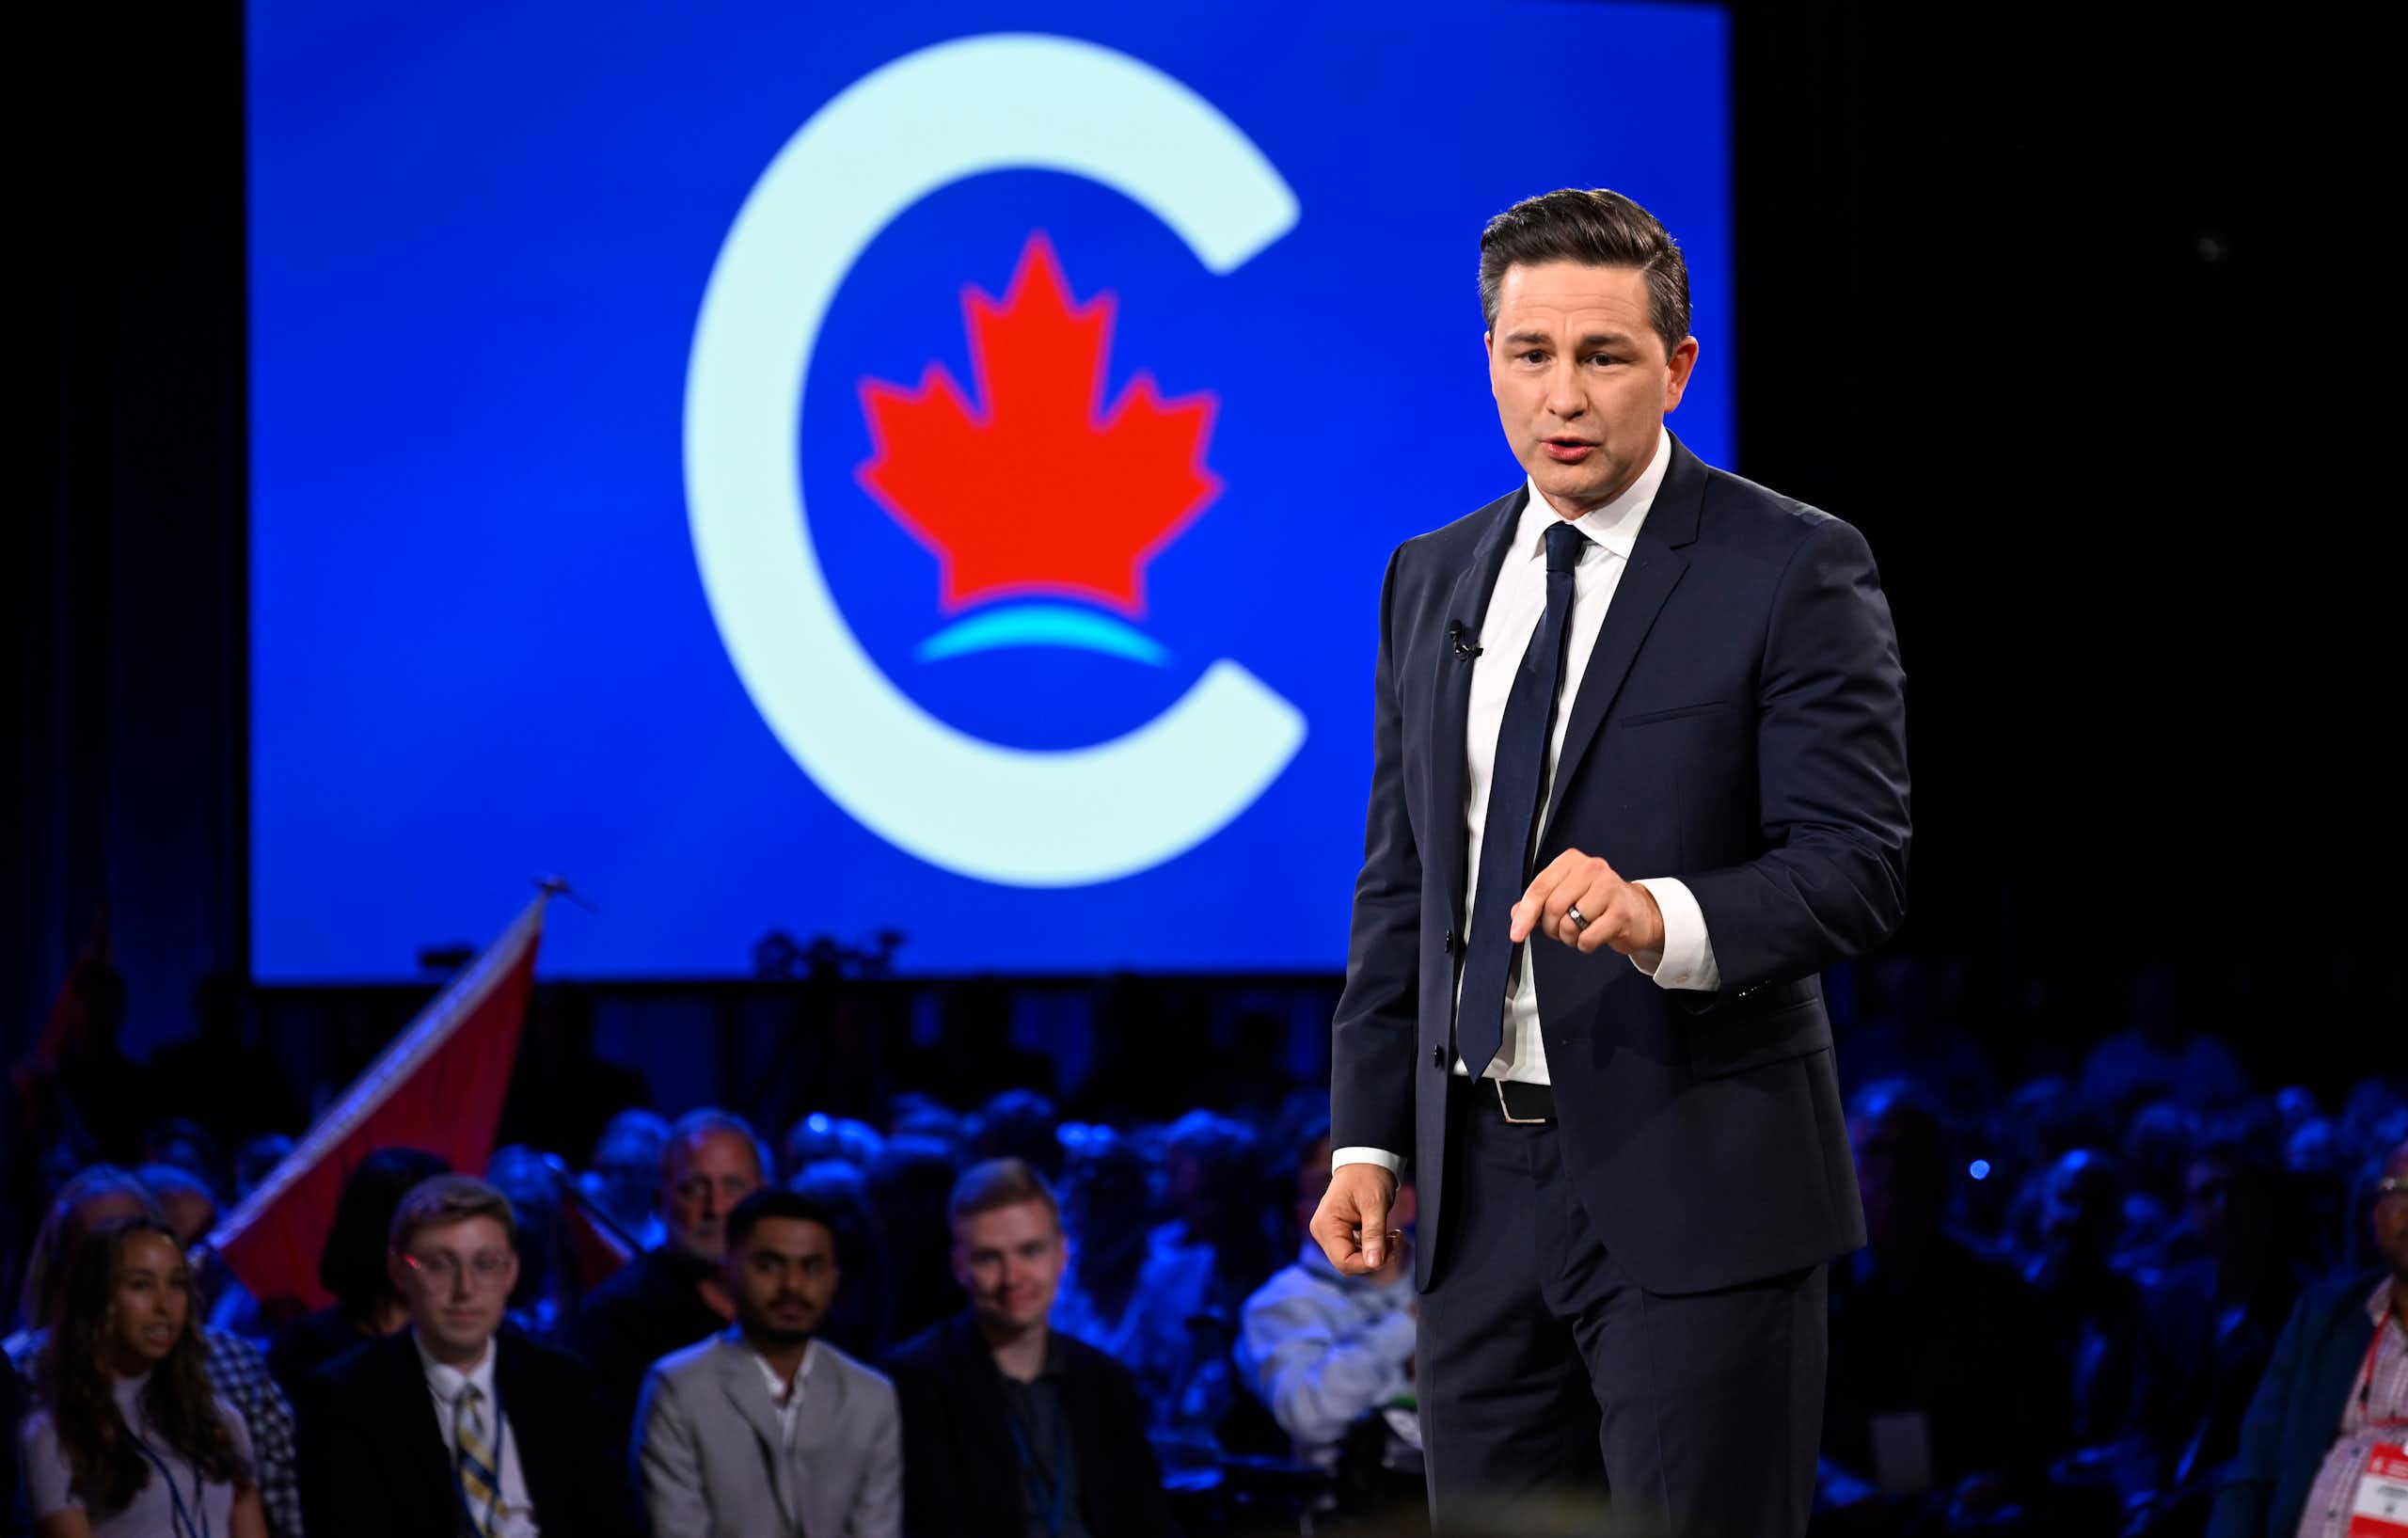 Un homme en cravate prend la parole devant une assemblée, avec un logo affiché derrière lui